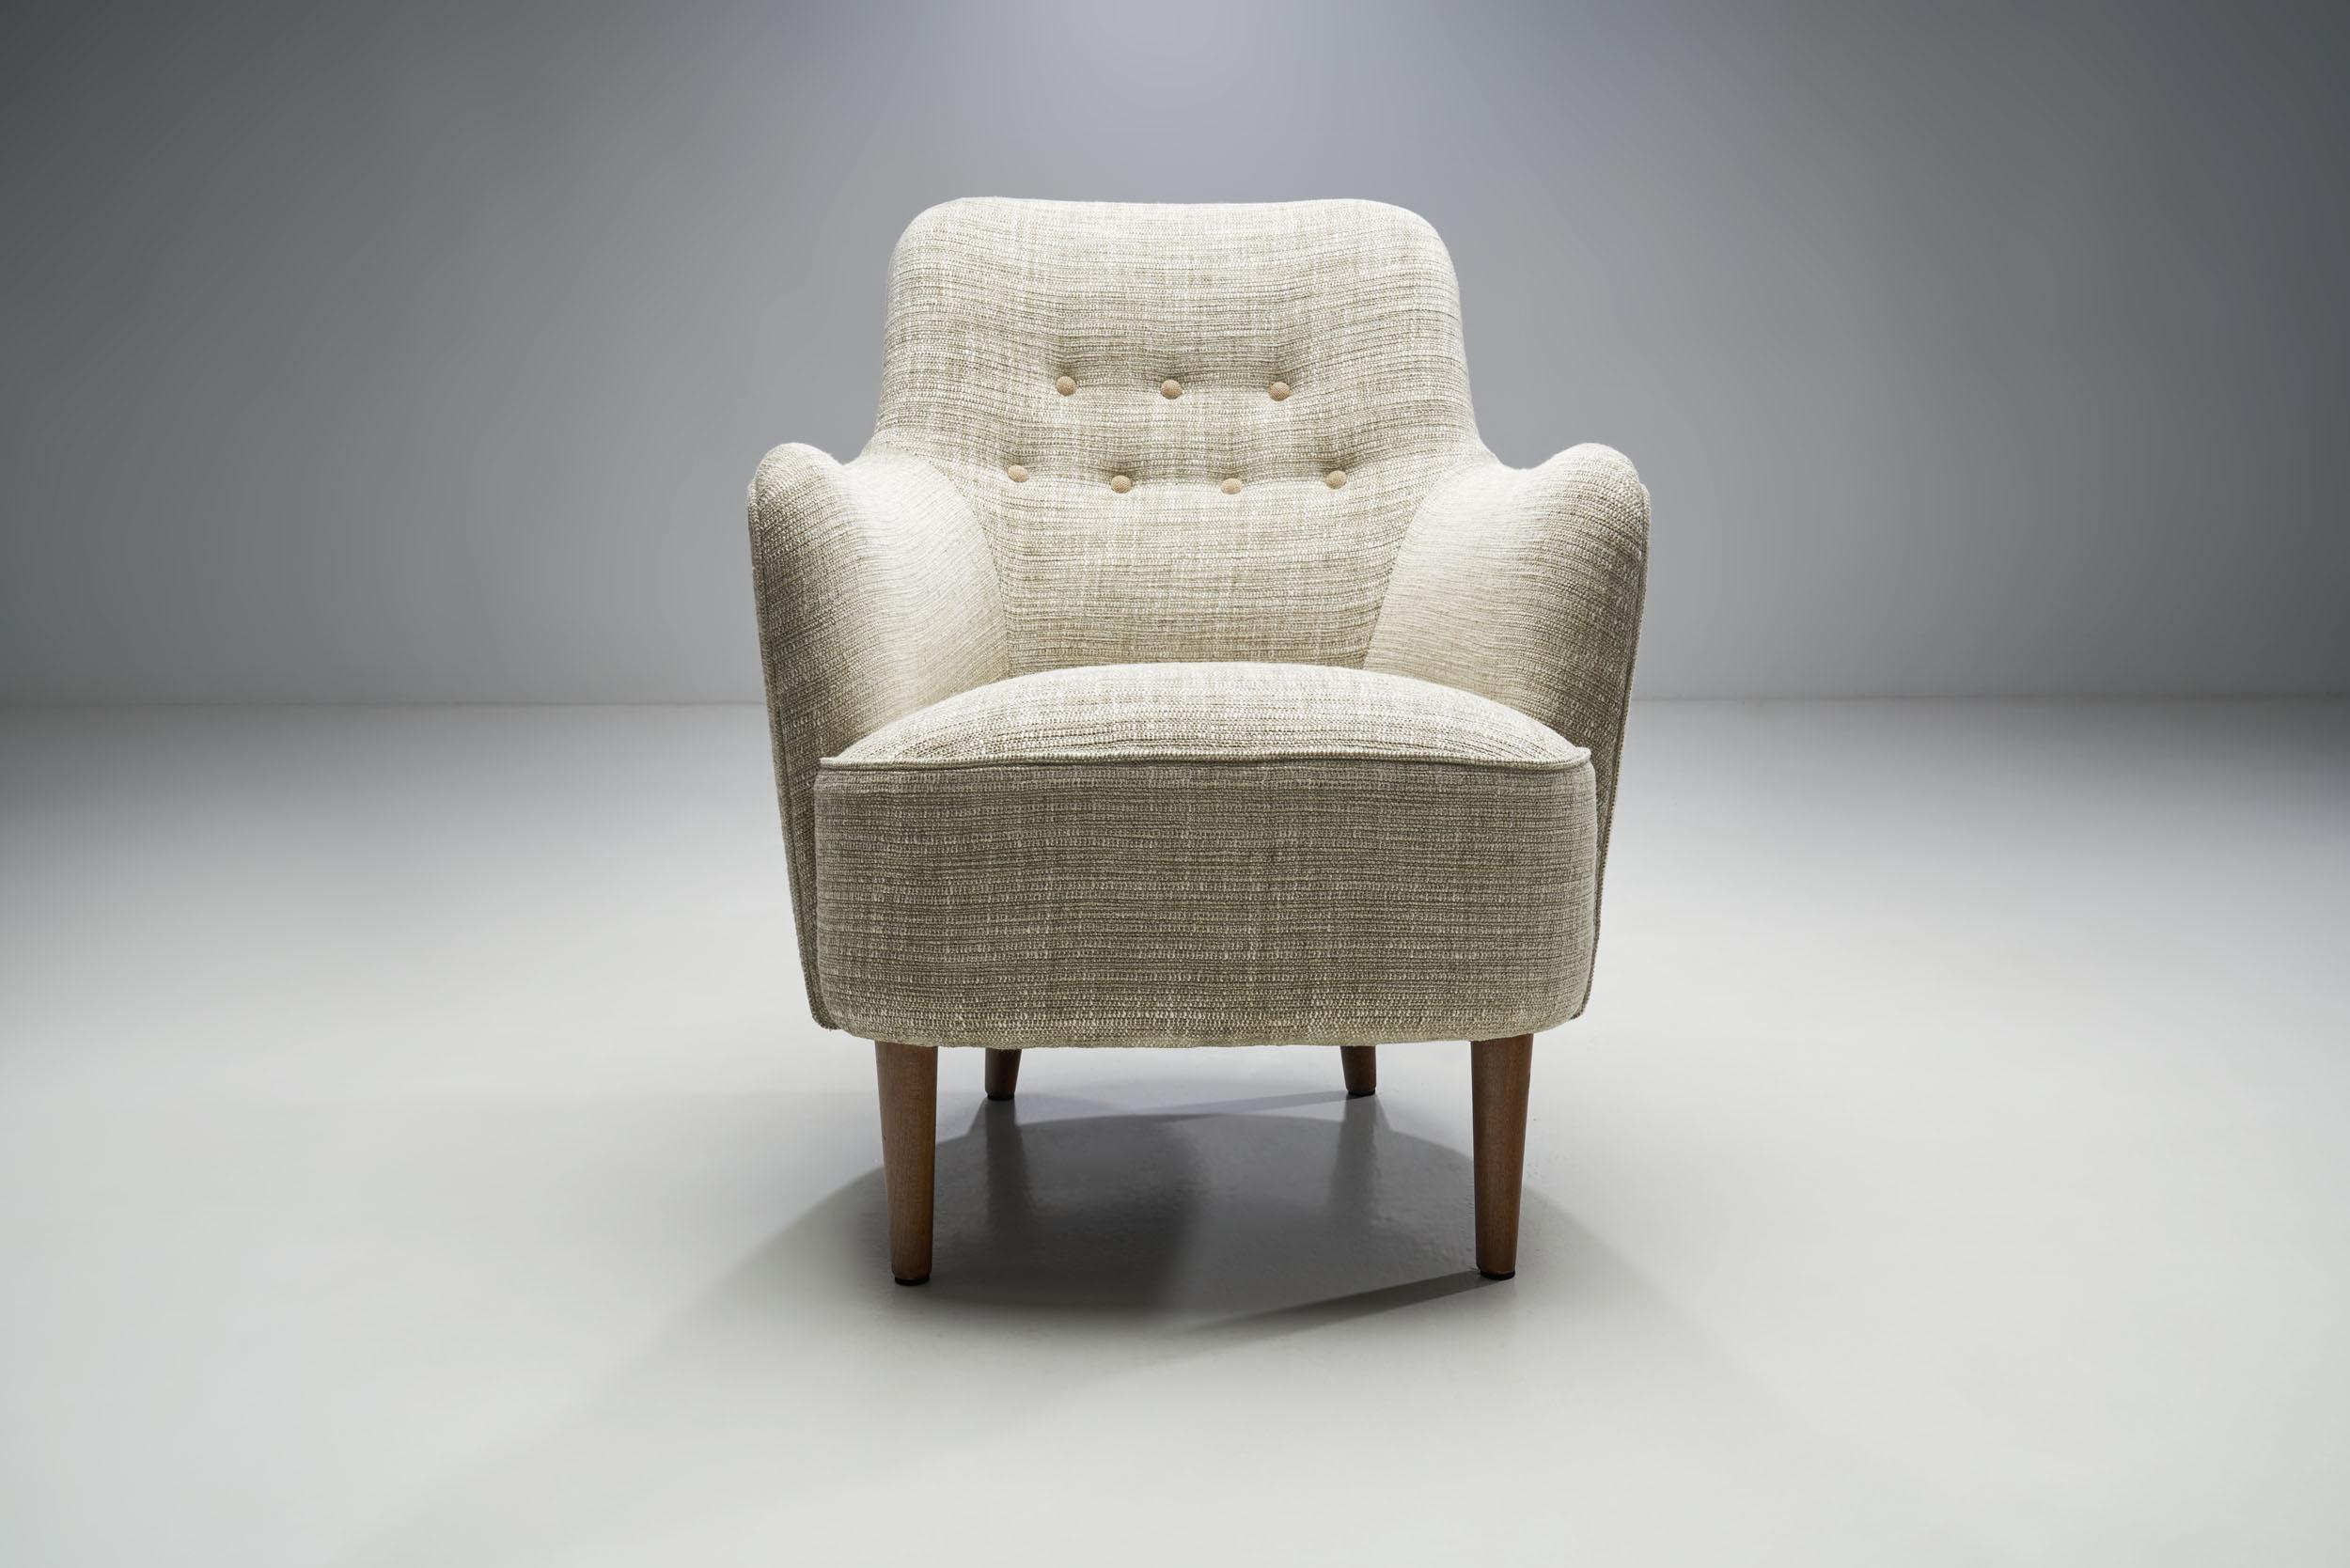 Mid-20th Century Carl Malmsten “Samsas” Armchair for O.H. Sjögren, Sweden 1960s For Sale